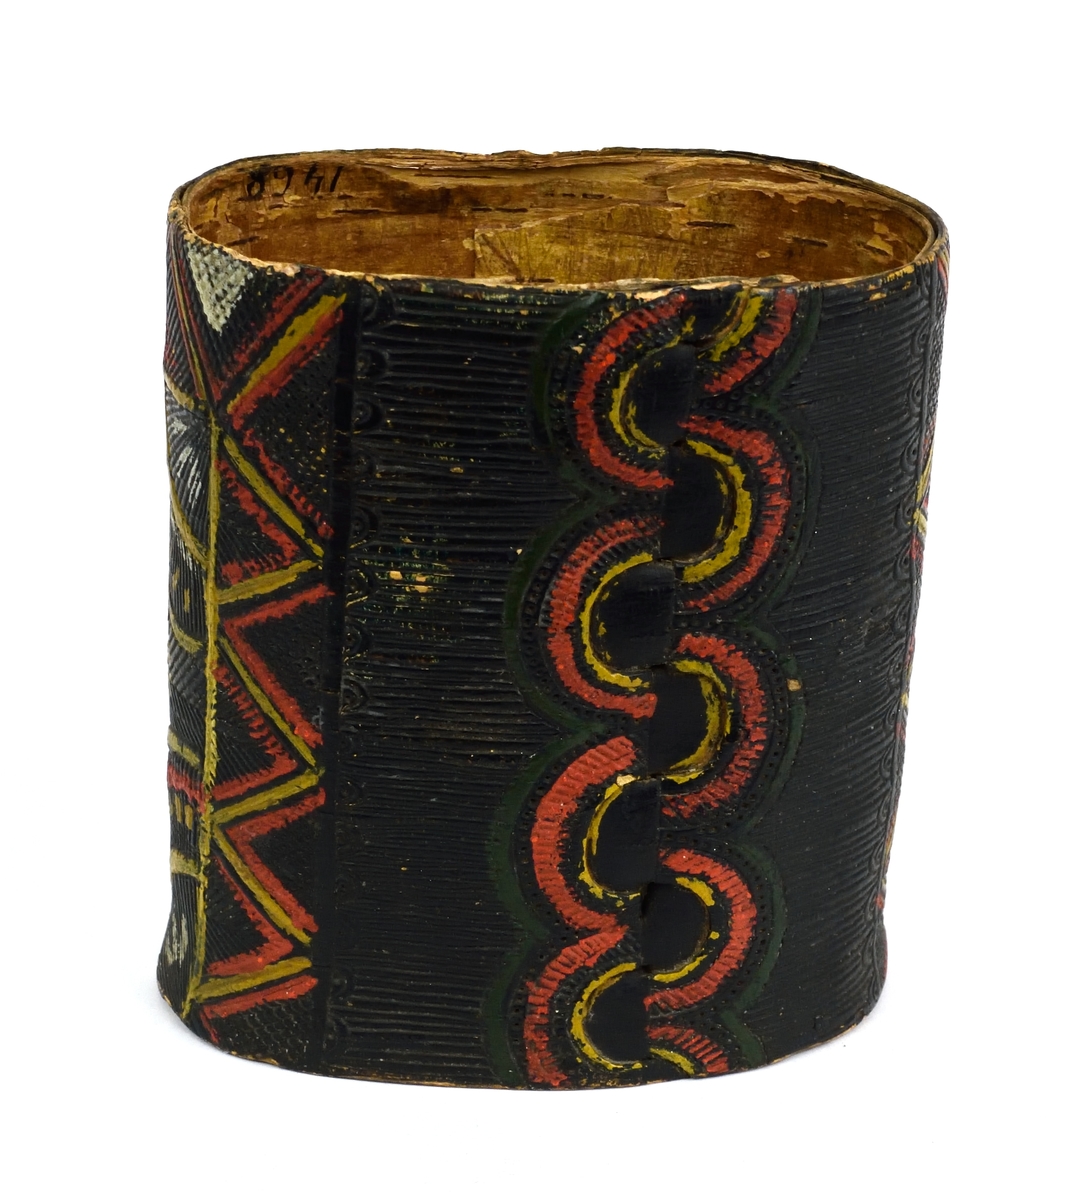 Förmodligen en tobaksburk. Burken är tillverkad av svept, tampad näver med botten av trä. Den har ristad dekoration runt om samt är målad i flera färger. Lock saknas.